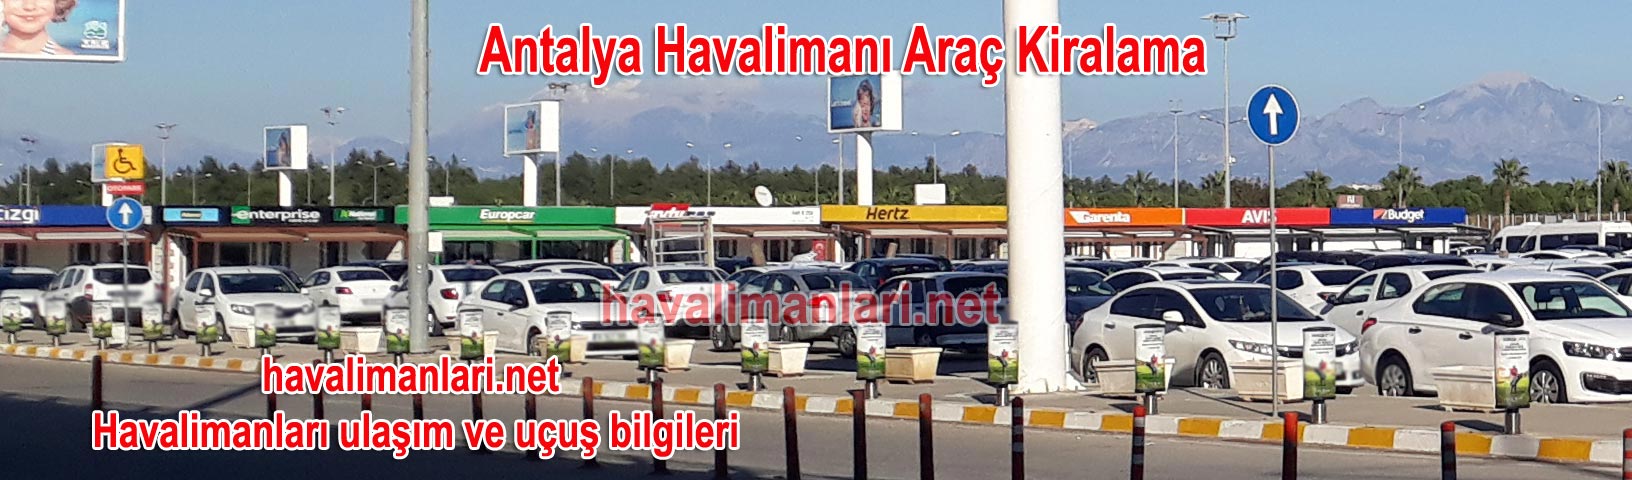 Antalya Havalimanı Araç Oto Araba Kiralama Şirketleri